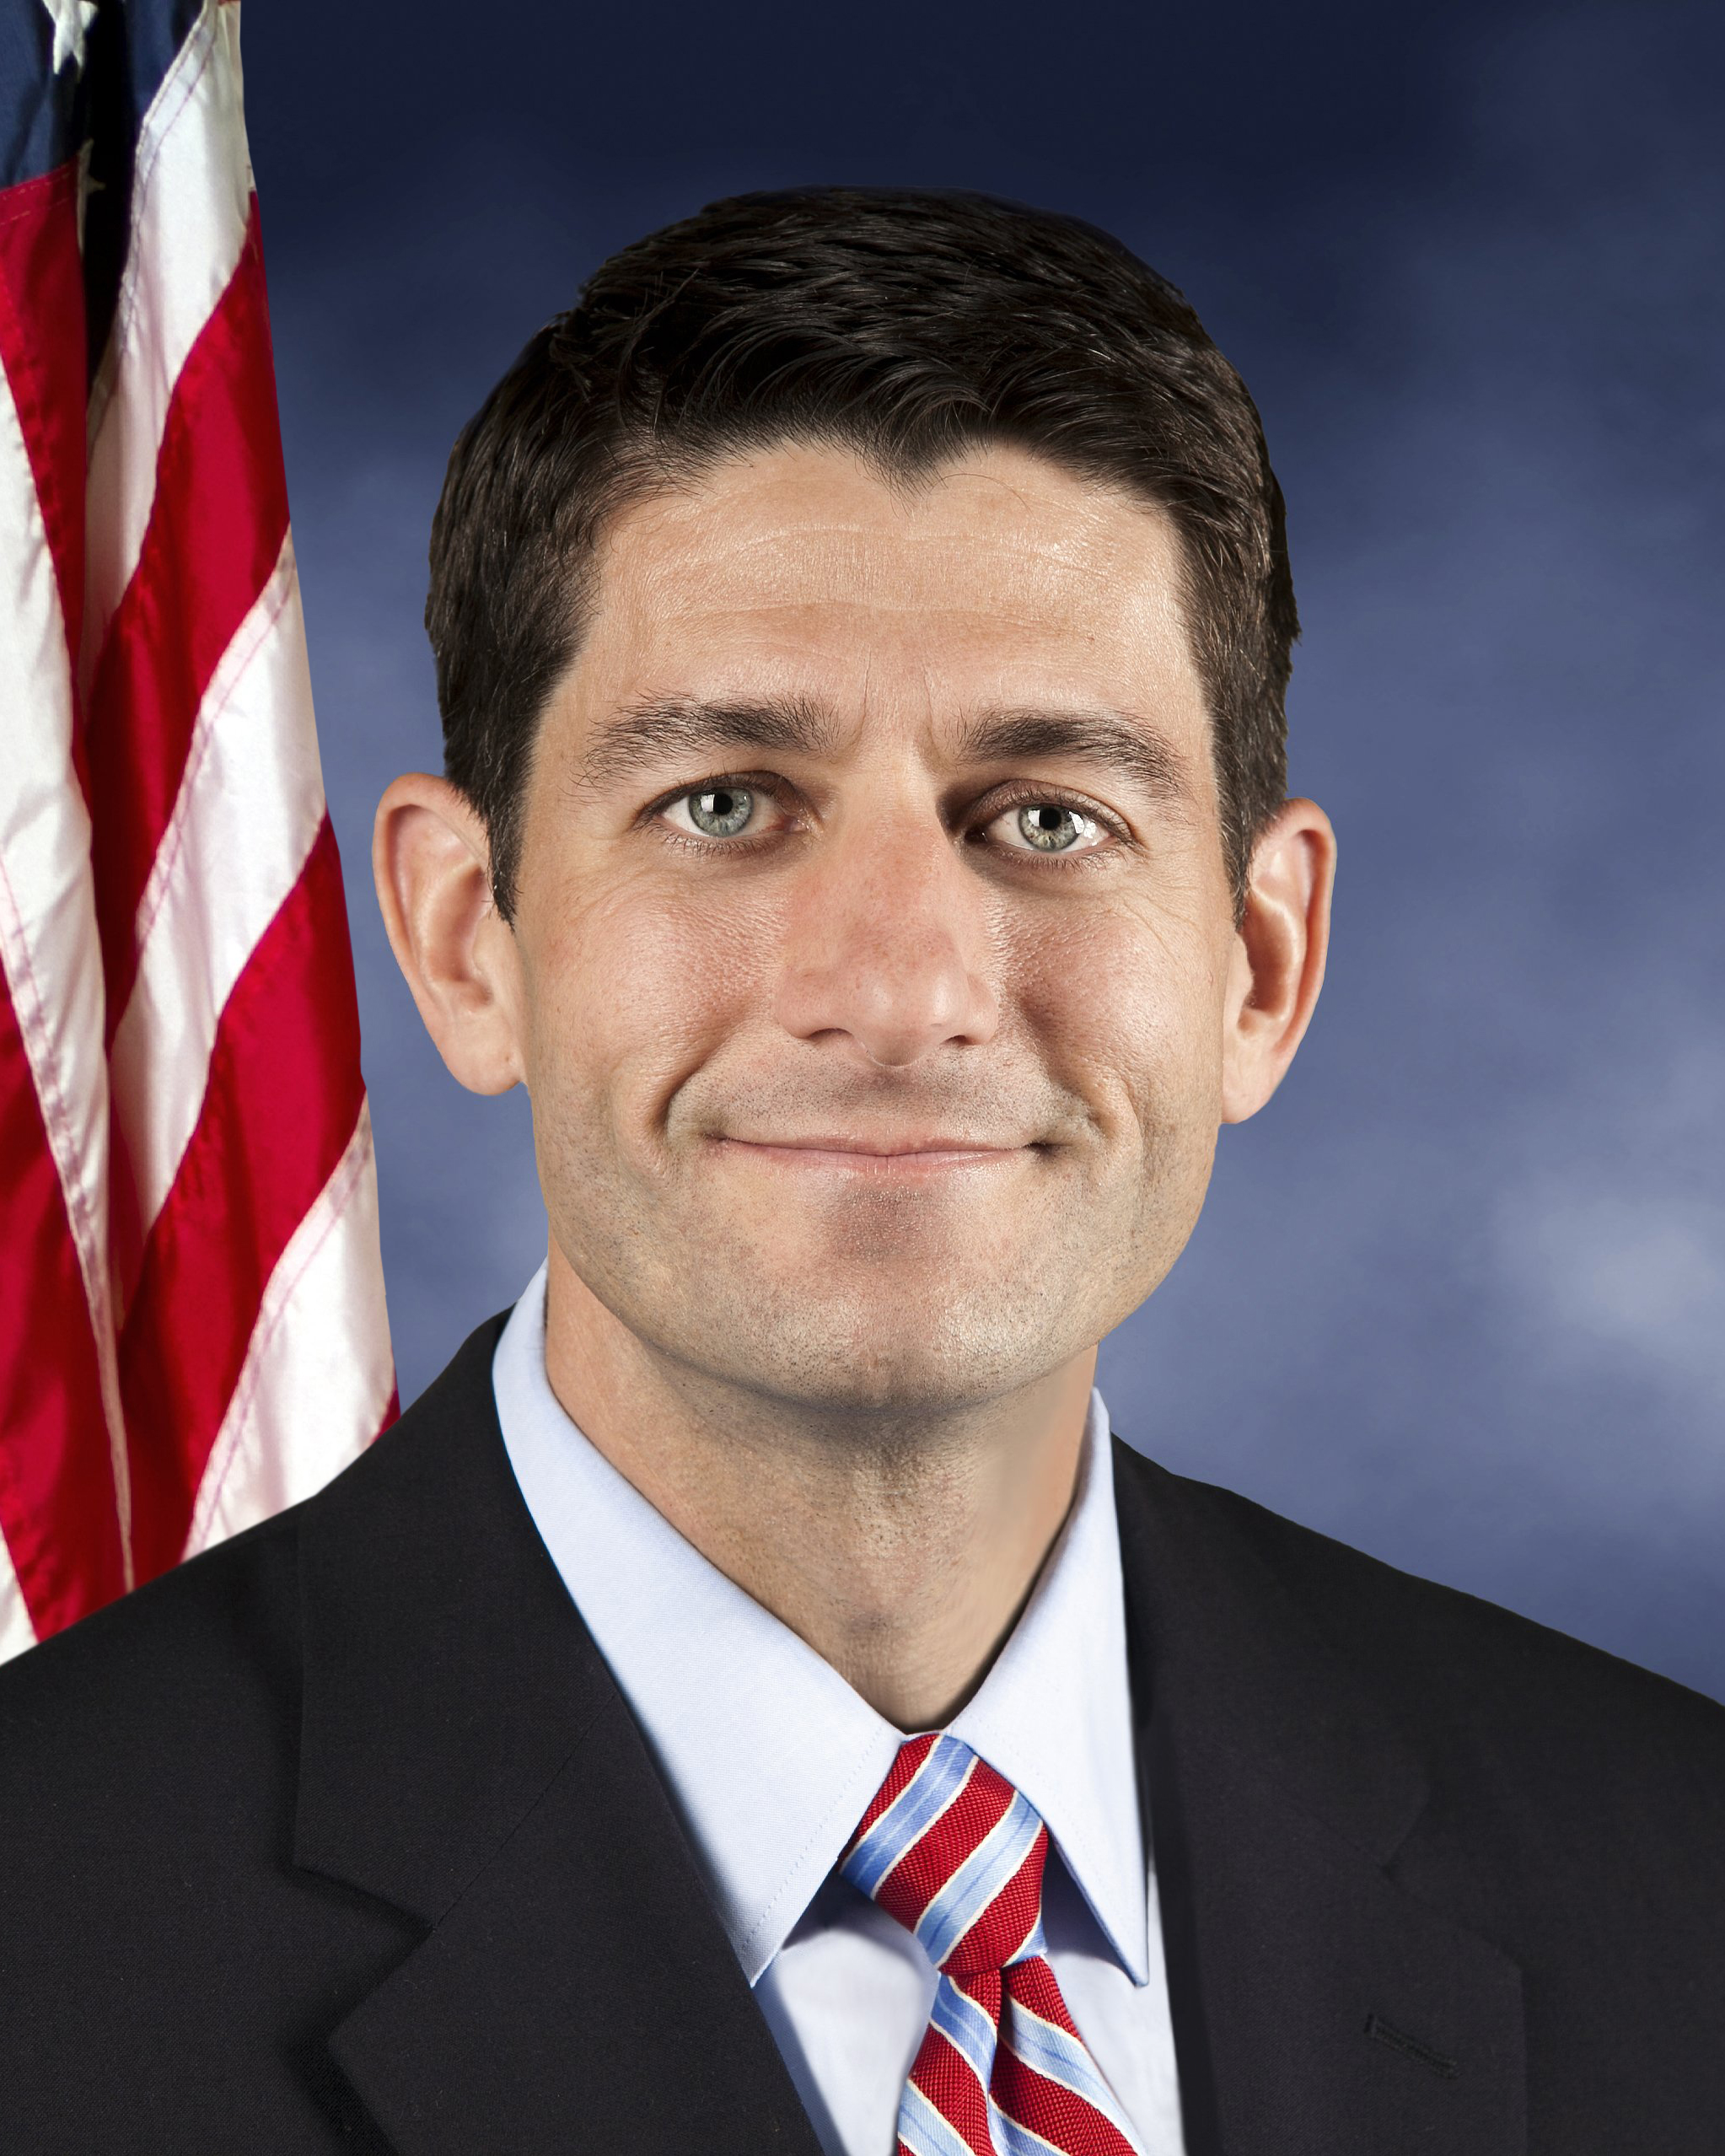 Rep. Paul Ryan